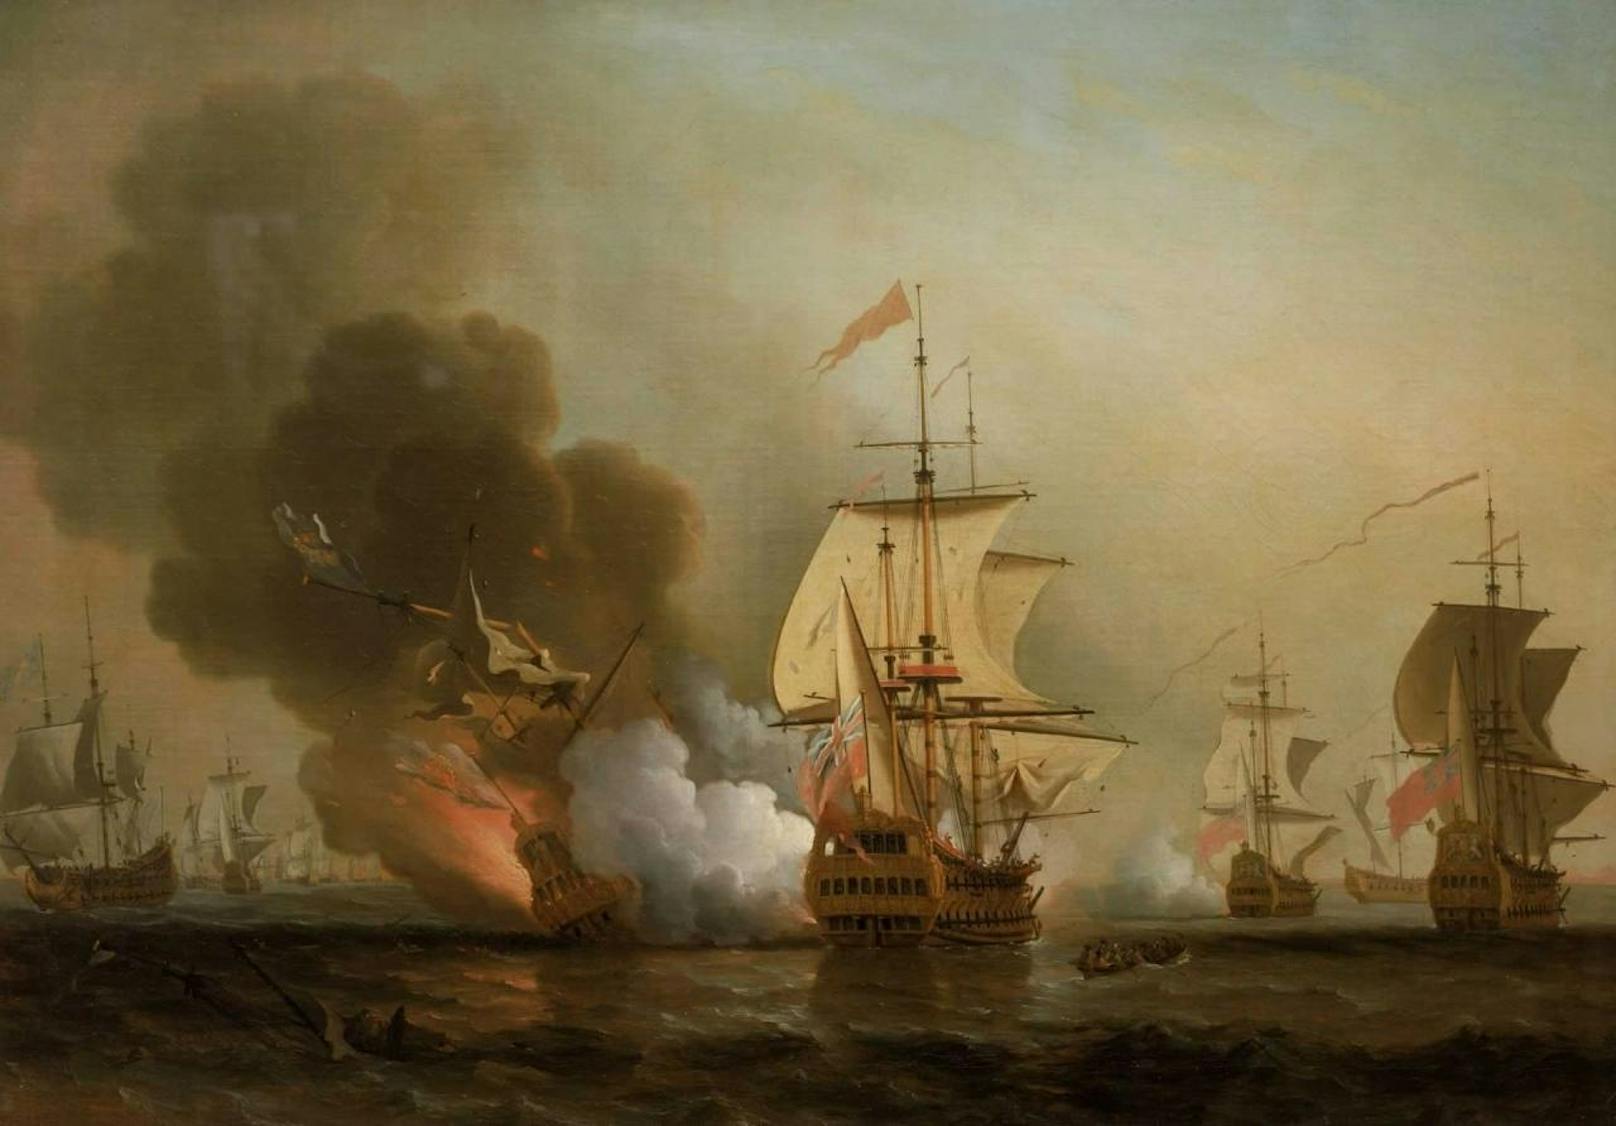 Historisch: Die "San José" wurde 1708 in Brand geschossen und versank mit ihrem Milliardenschatz - wie hier auf dem Ölgemälde von Samuel Scott dargestellt.